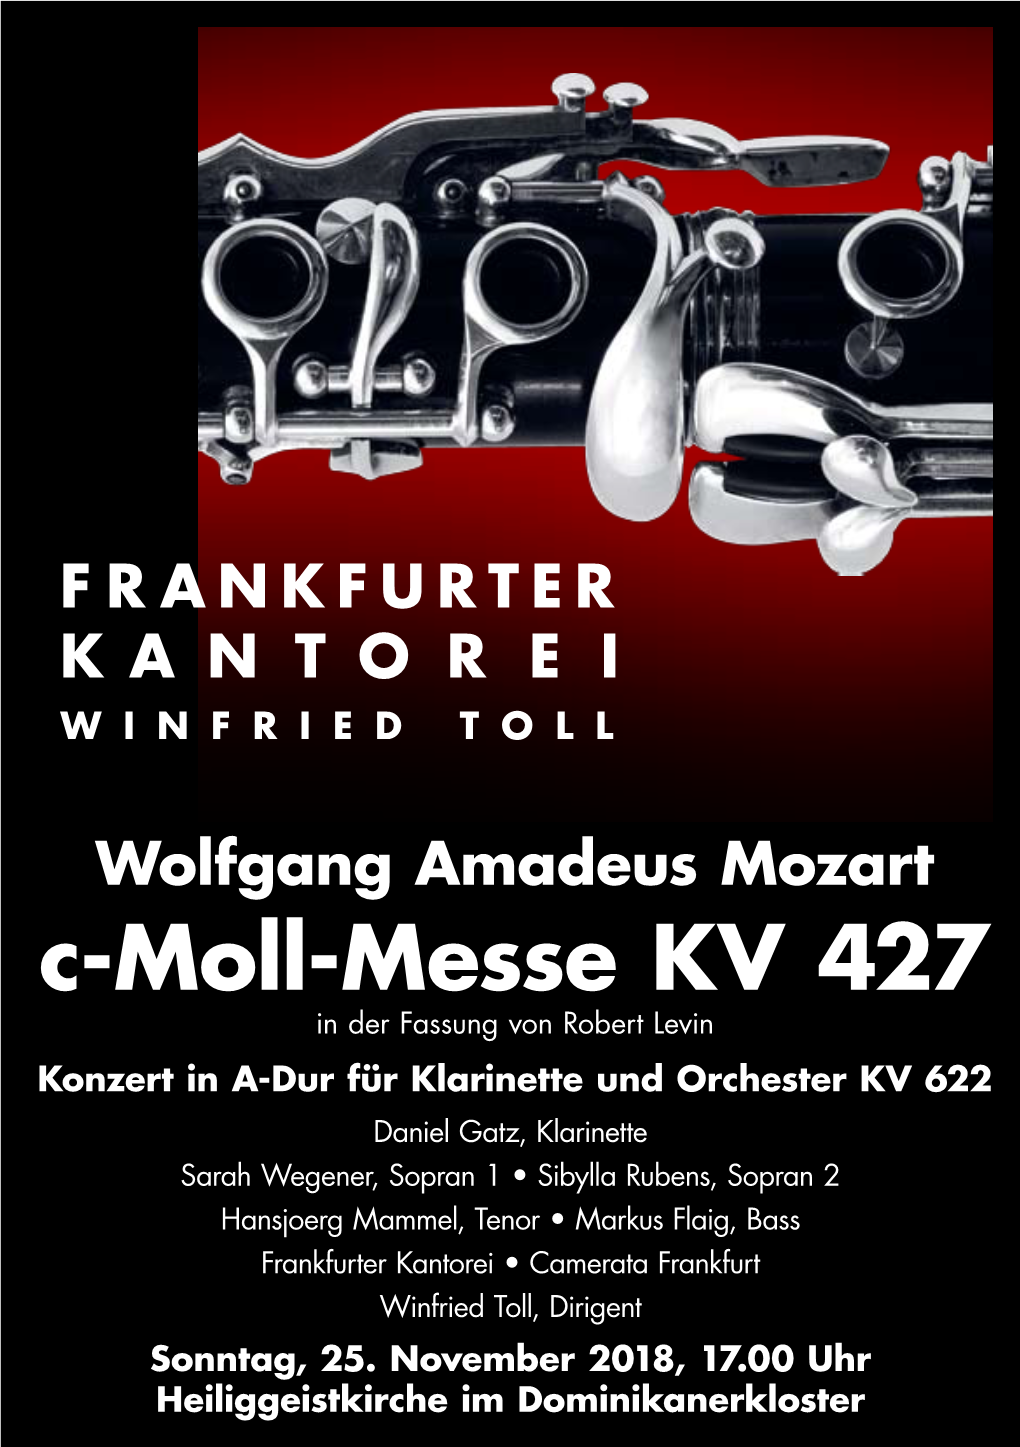 C-Moll-Messe KV